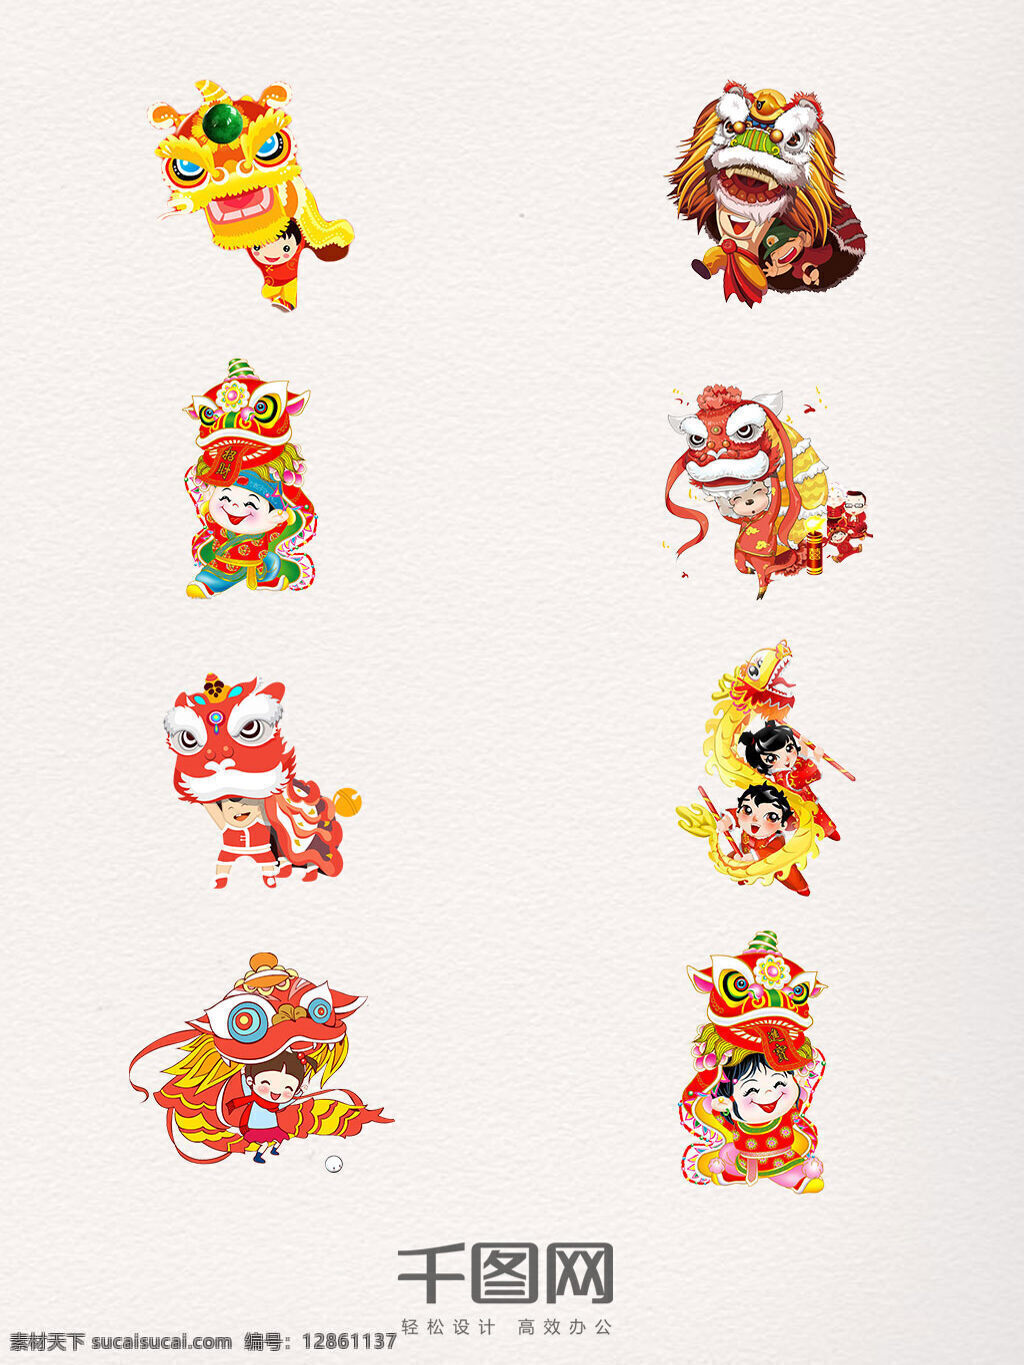 卡通 舞龙舞狮 png素材 卡通人物 节日 喜庆 庆祝 传统 中古风